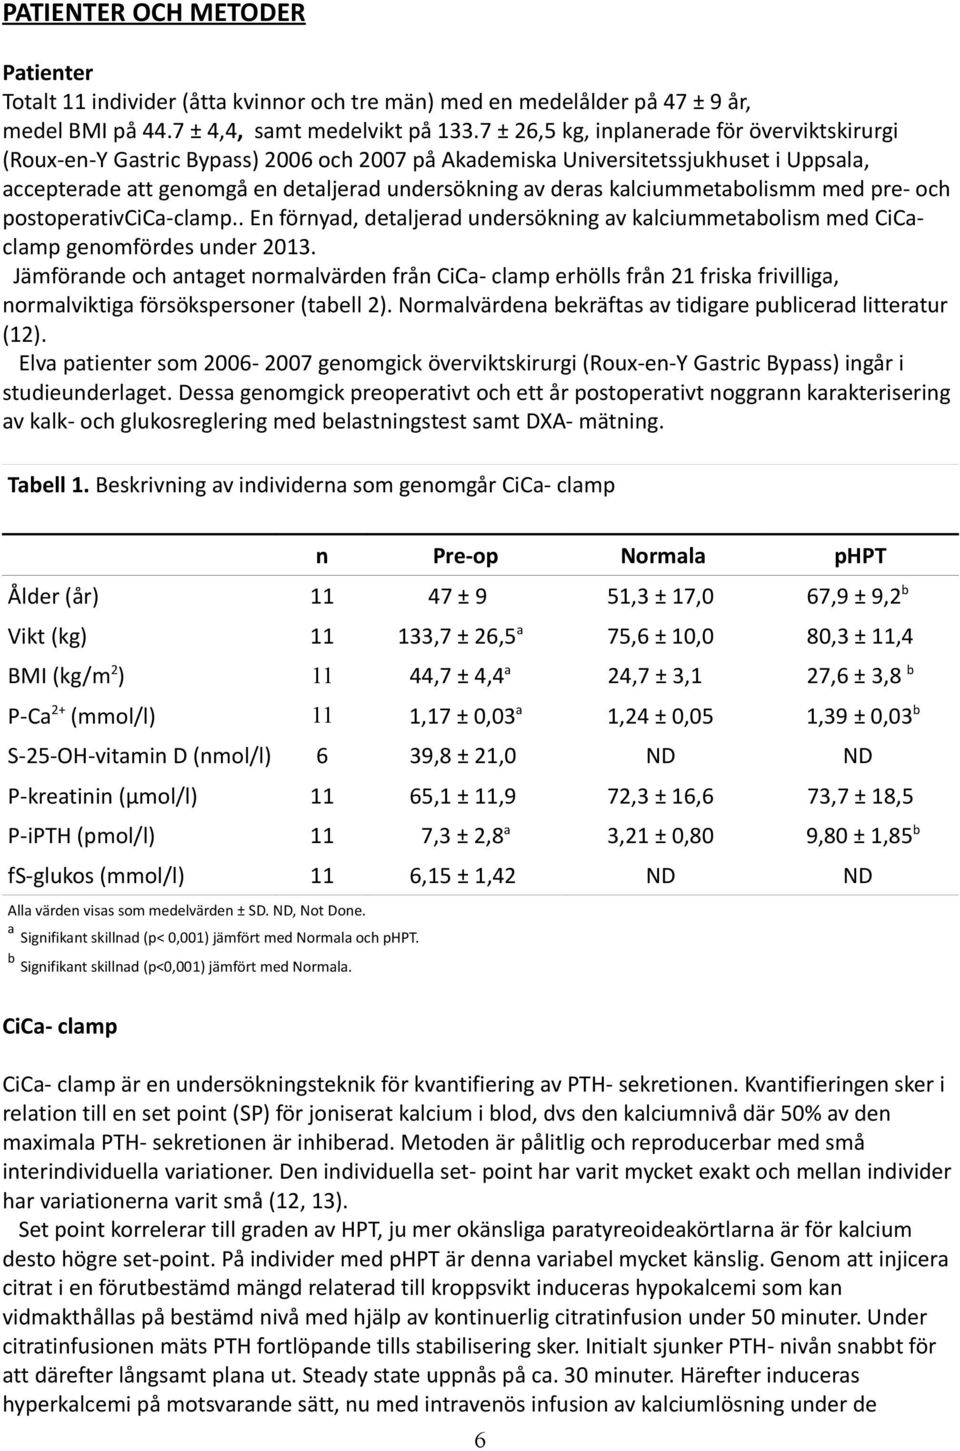 kalciummetabolismm med pre- och postoperativcica-clamp.. En förnyad, detaljerad undersökning av kalciummetabolism med CiCaclamp genomfördes under 2013.